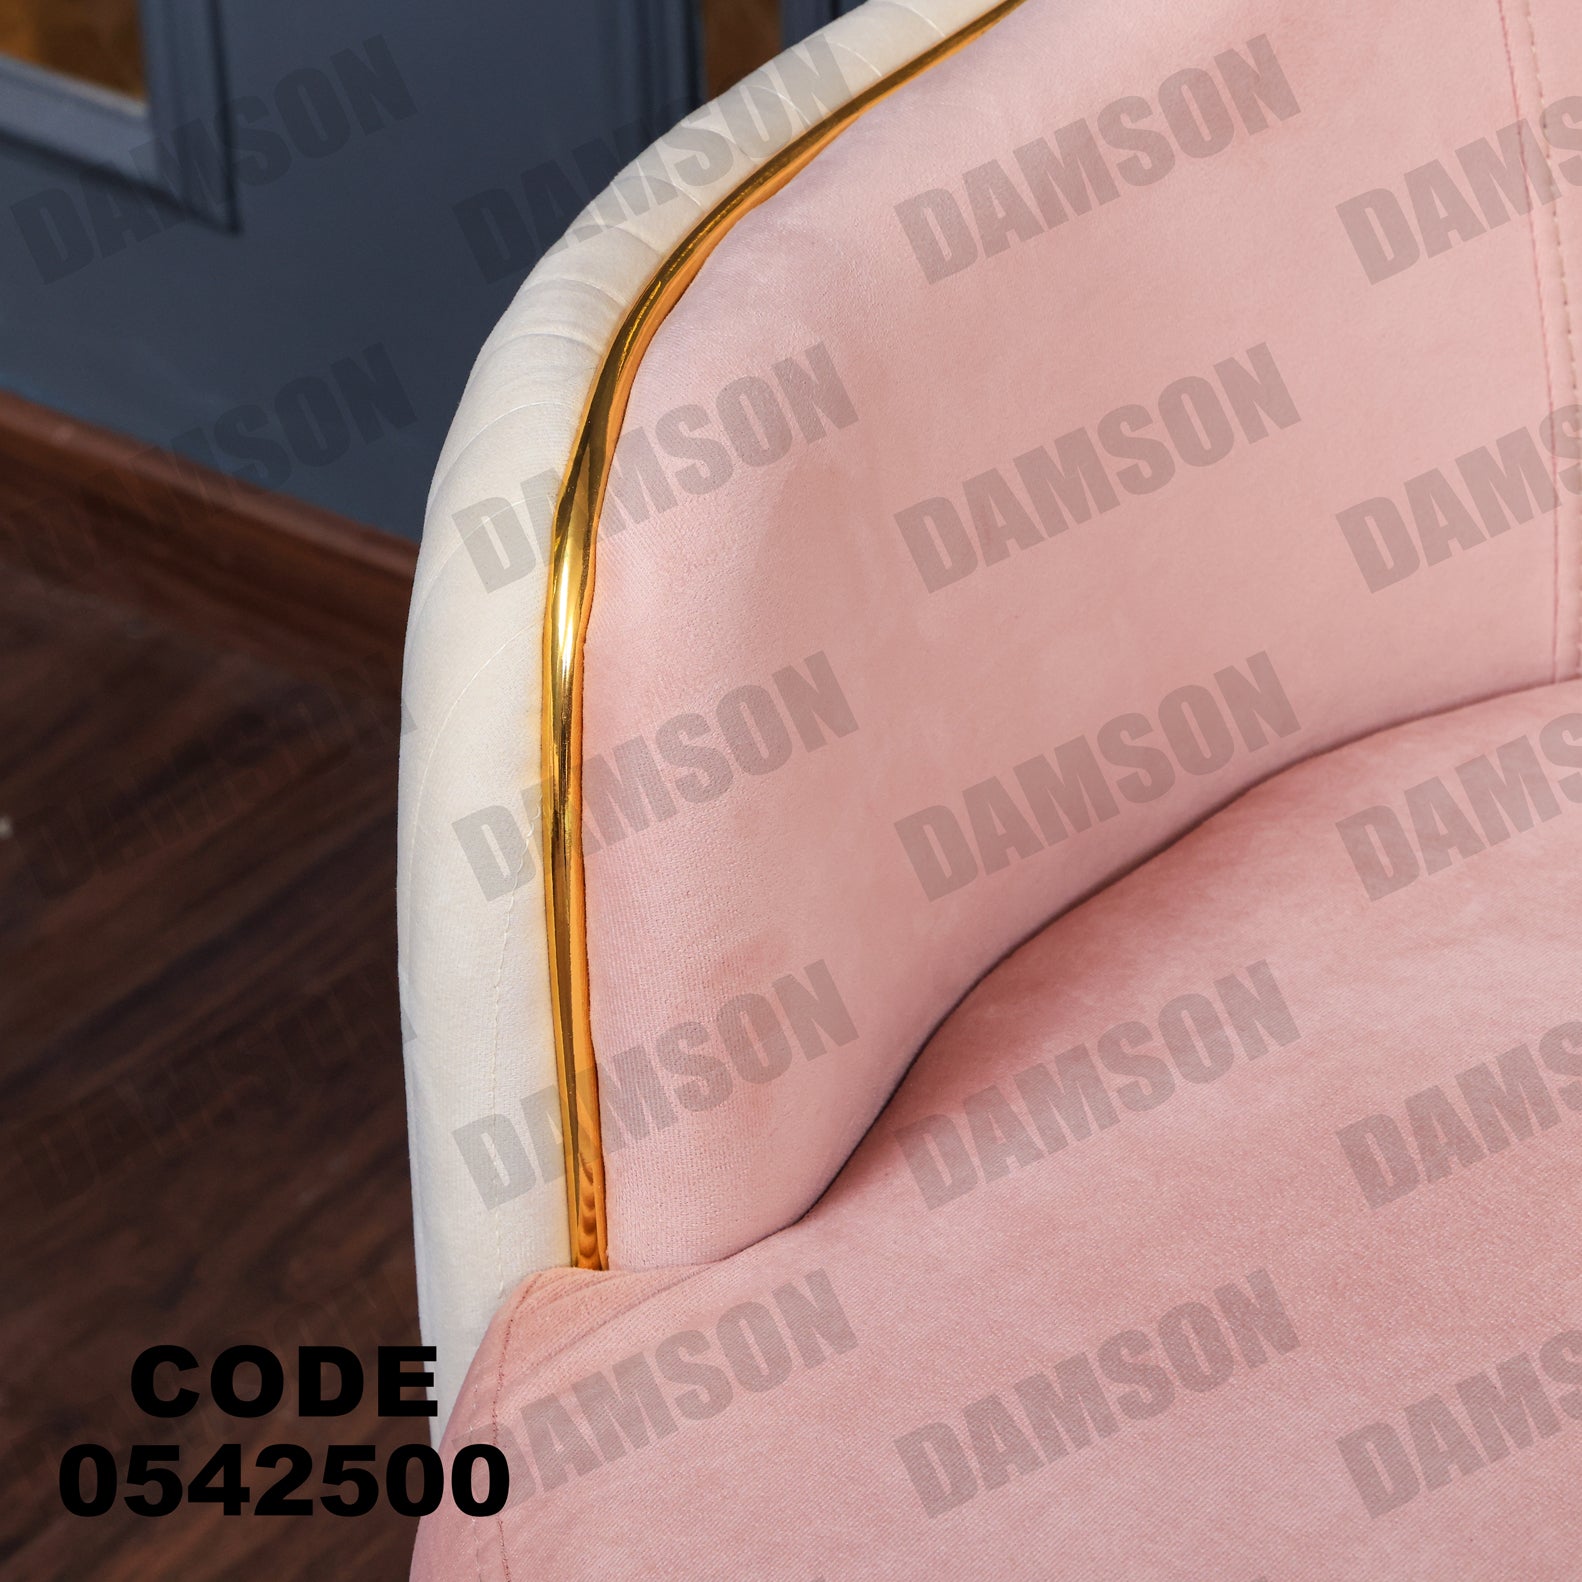 فوتية 1-425 - Damson Furnitureفوتية 1-425